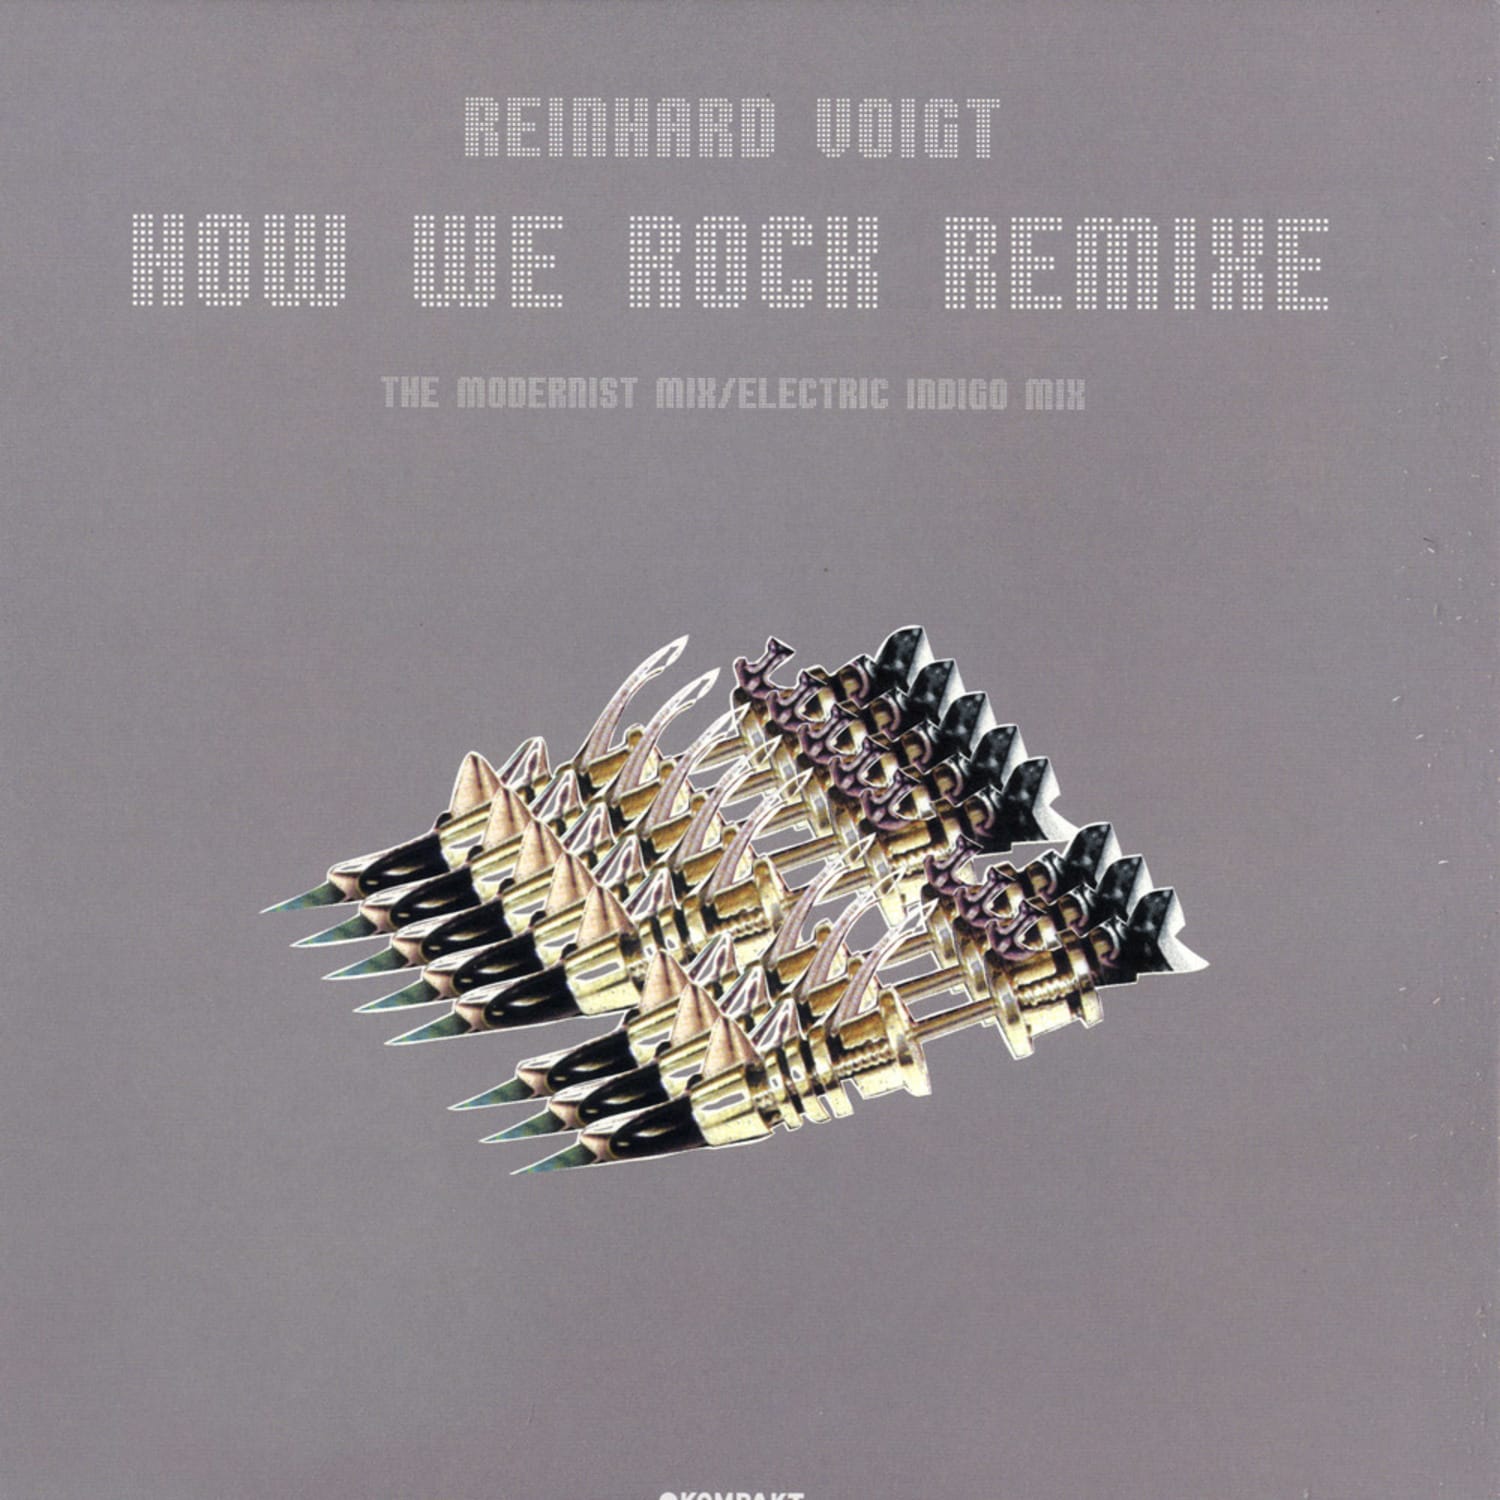 Reinhard Voigt - HOW WE ROCK REMIXE